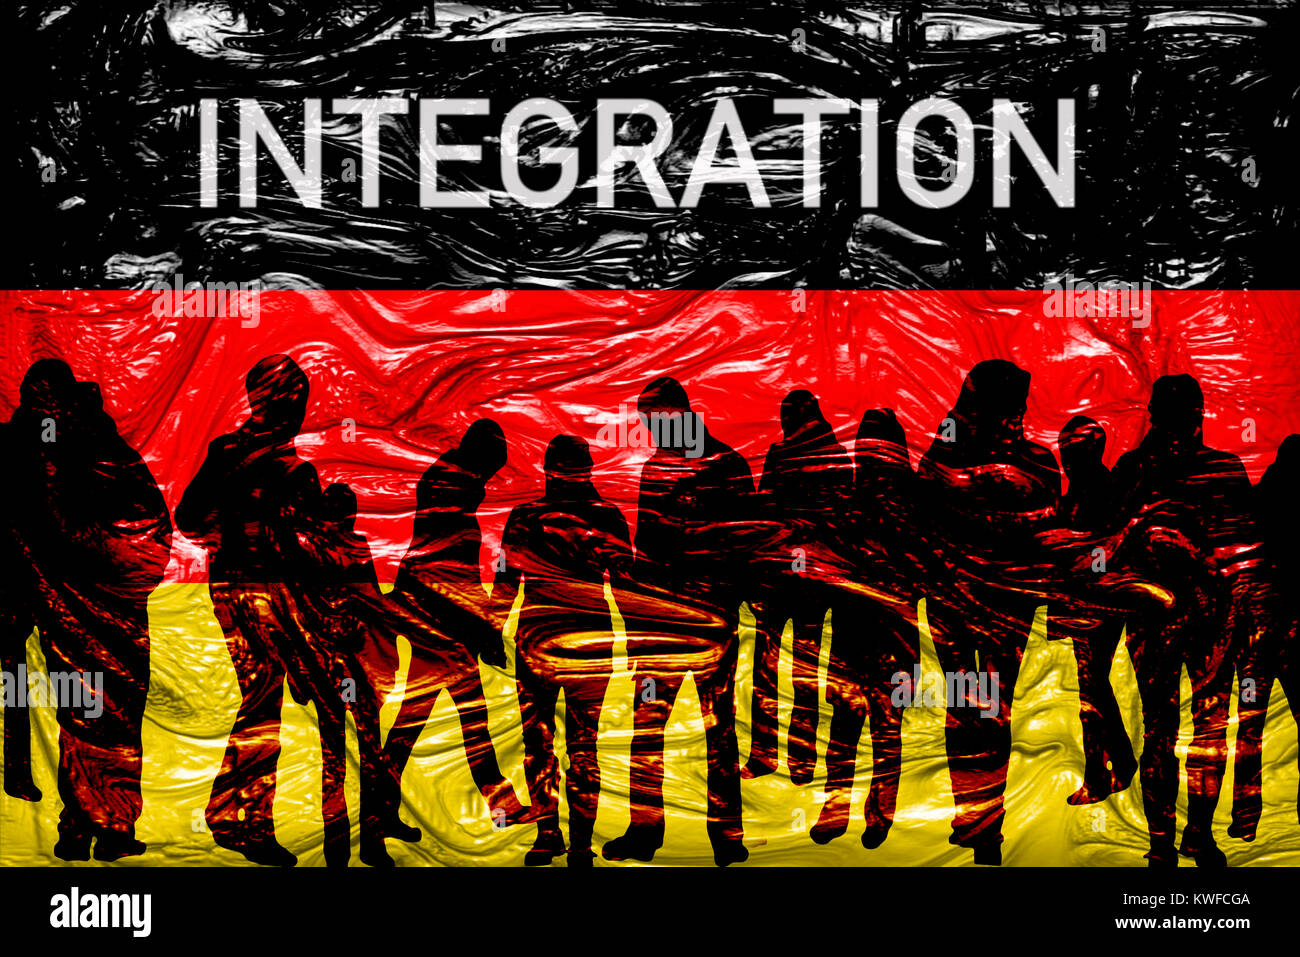 Silhouettes of people before Germany flag and the word Integration, Silhouetten von Menschen vor Deutschlandfahne und das Wort Integration Stock Photo